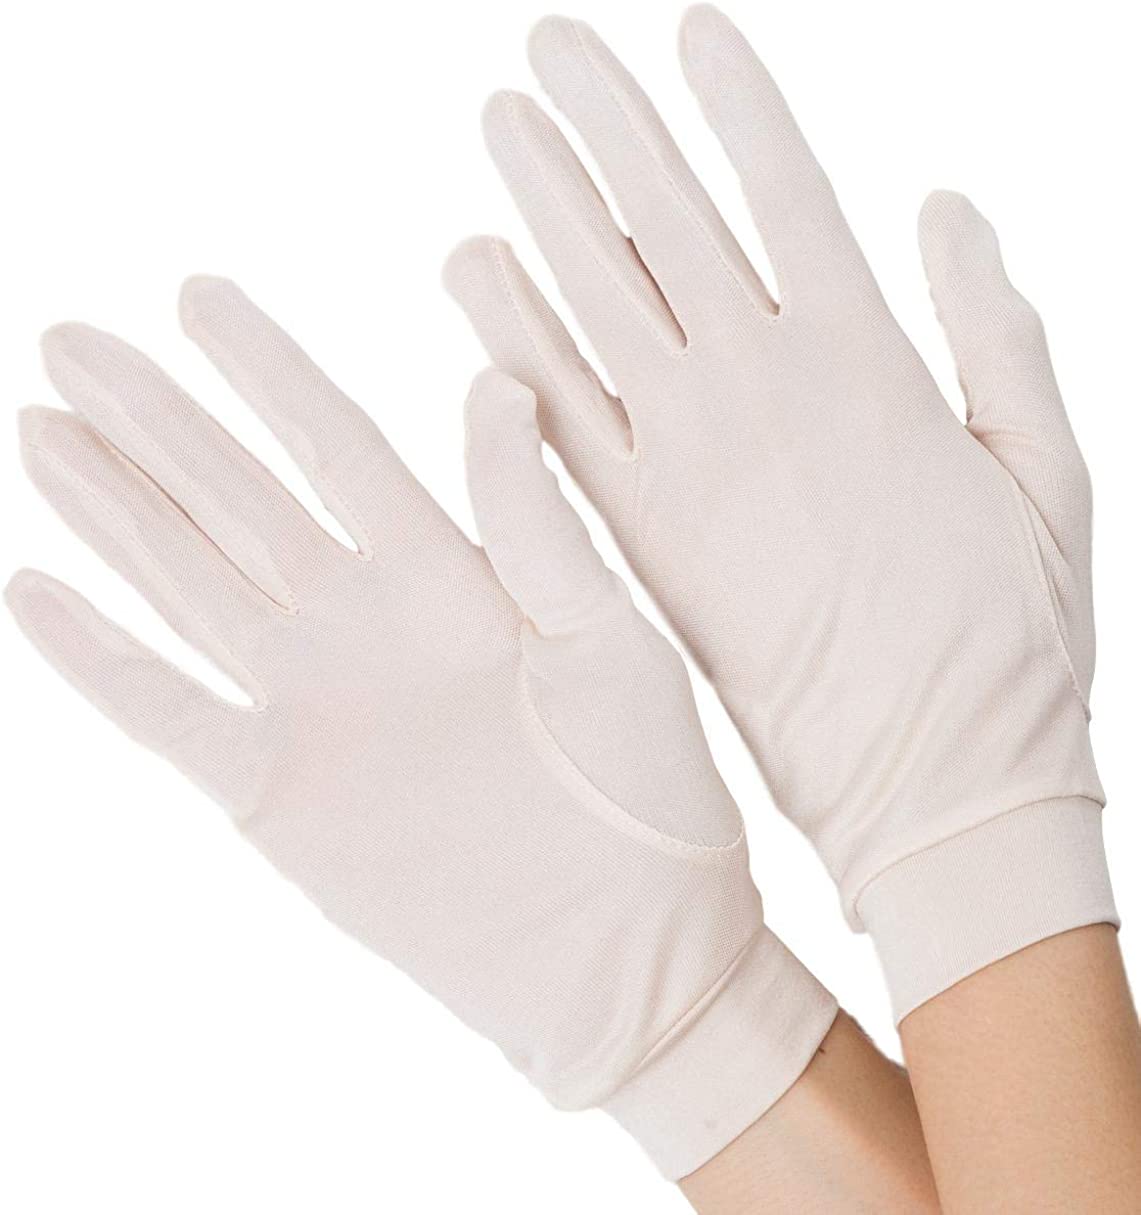 ナイト手袋 シルク手袋 日焼け対策手袋 寝る時につける手袋 シルク 100% uv手袋 手荒れ 指な...